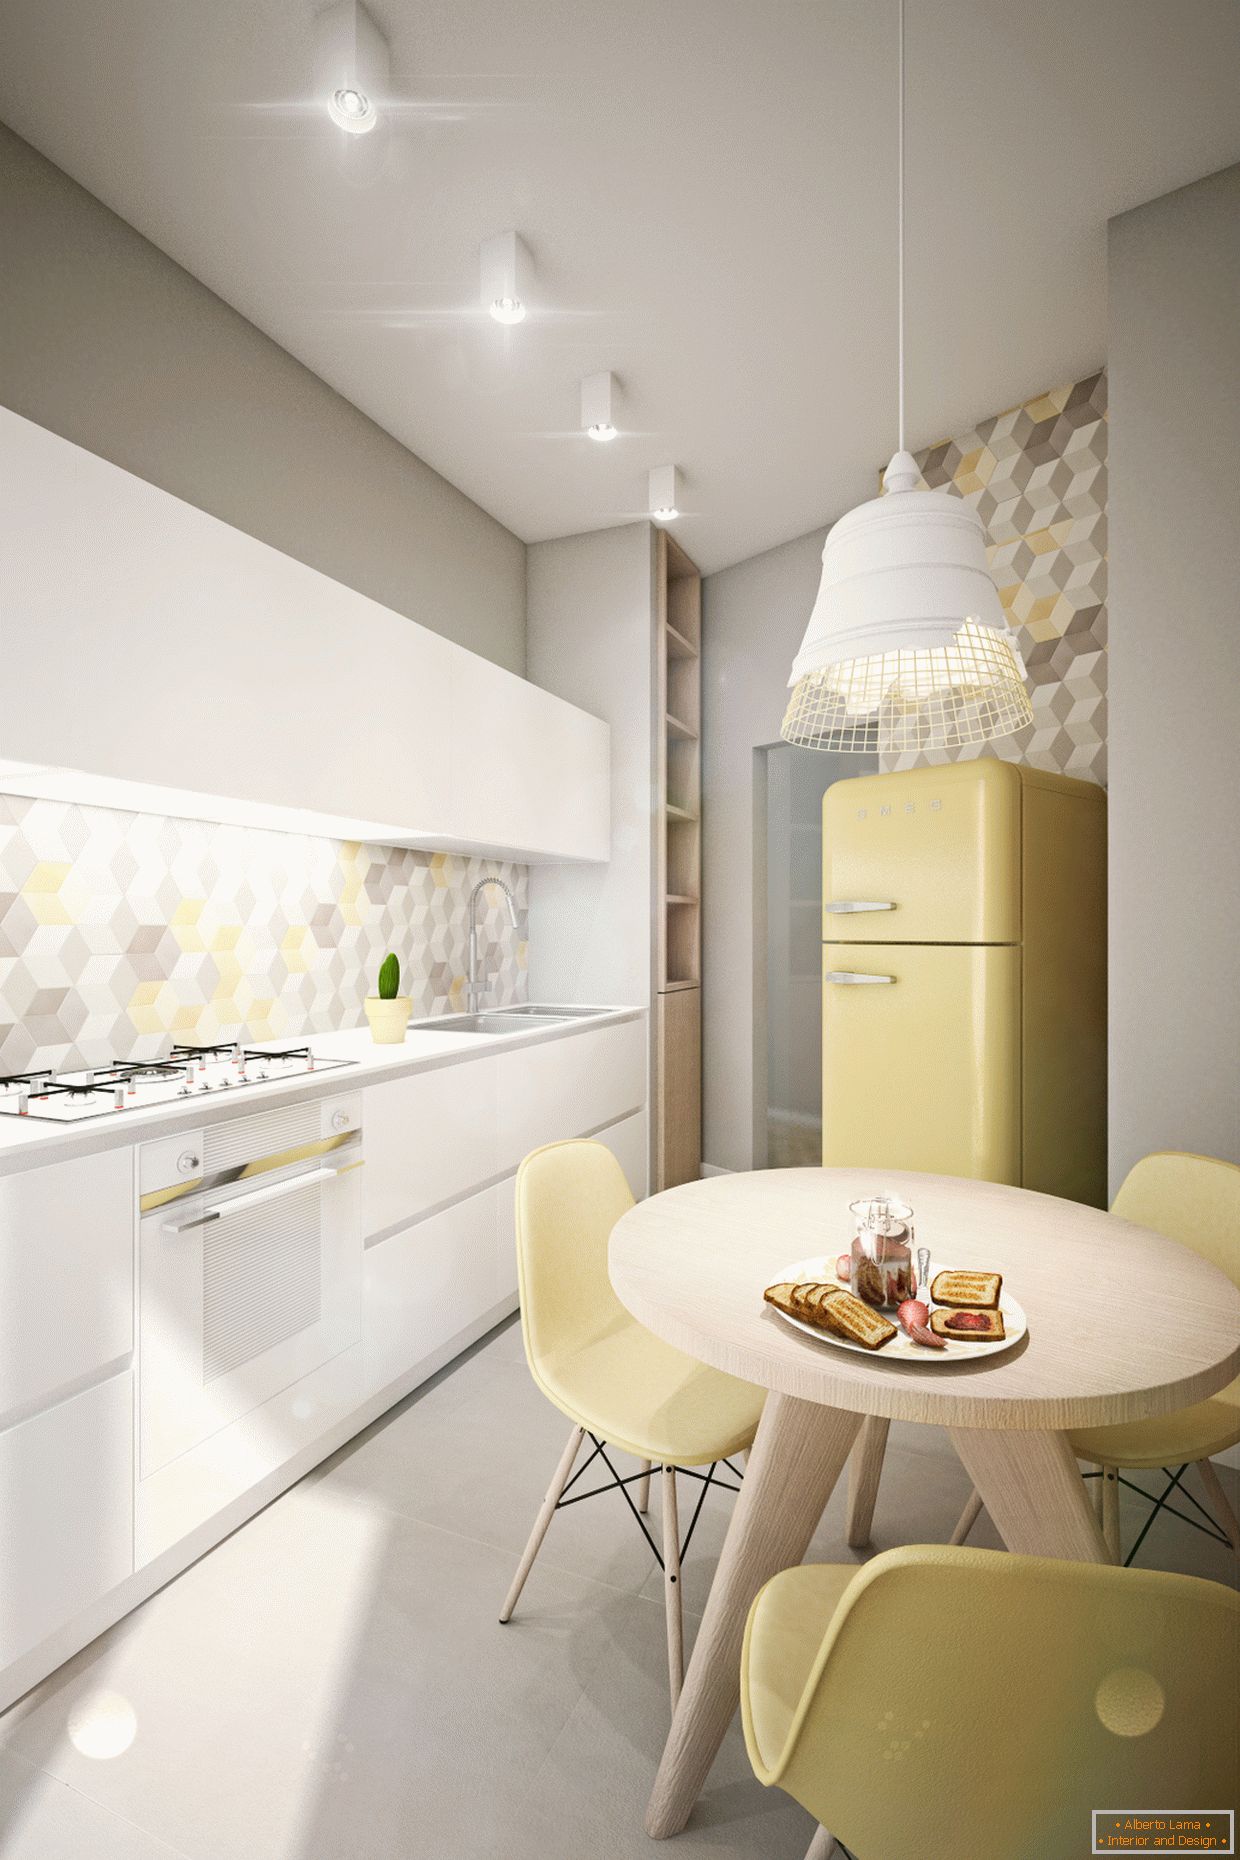 Apartament de design în culori pastelate: bucătărie